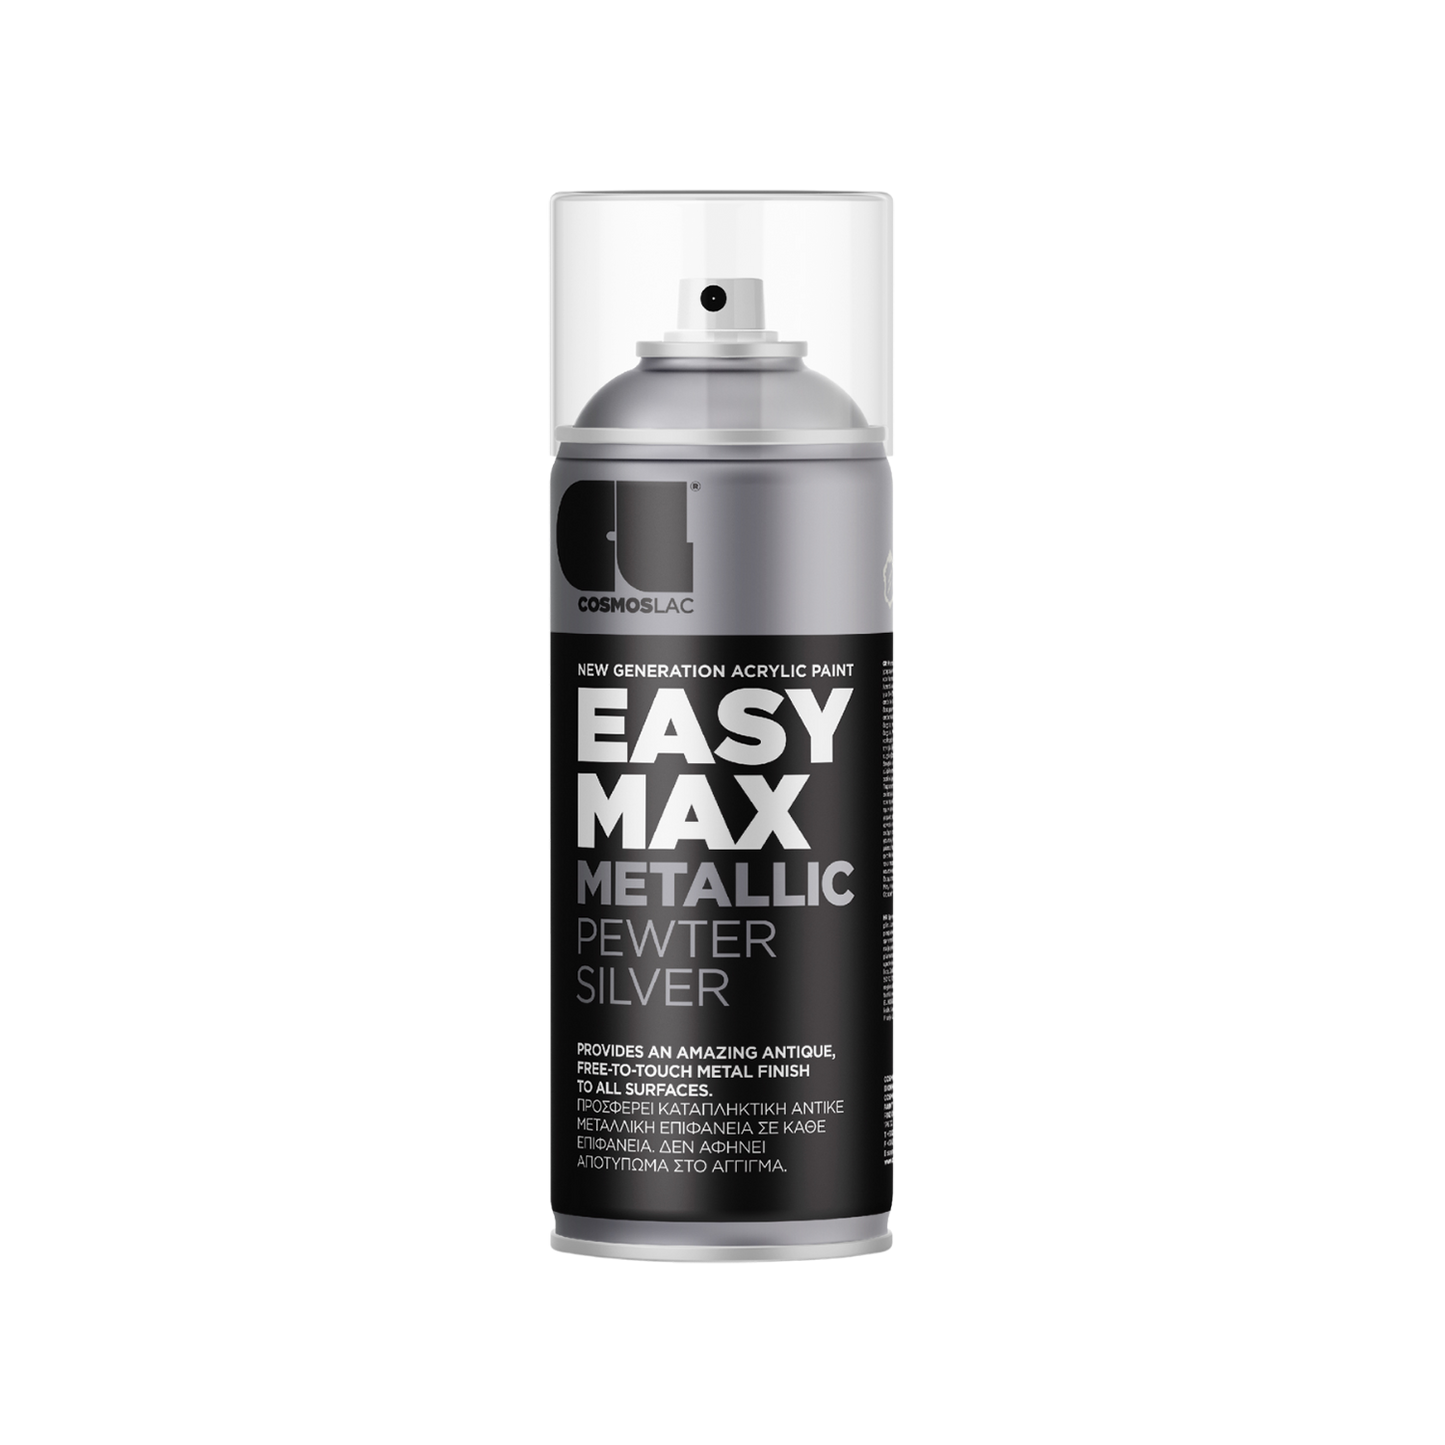 COSMOS LAC EASY MAX Premium Acryllack Sprühlack zum Upcycling und DIY Projekten von Möbeln und Dekoobjekten Schwarz silberne Sprühflasche